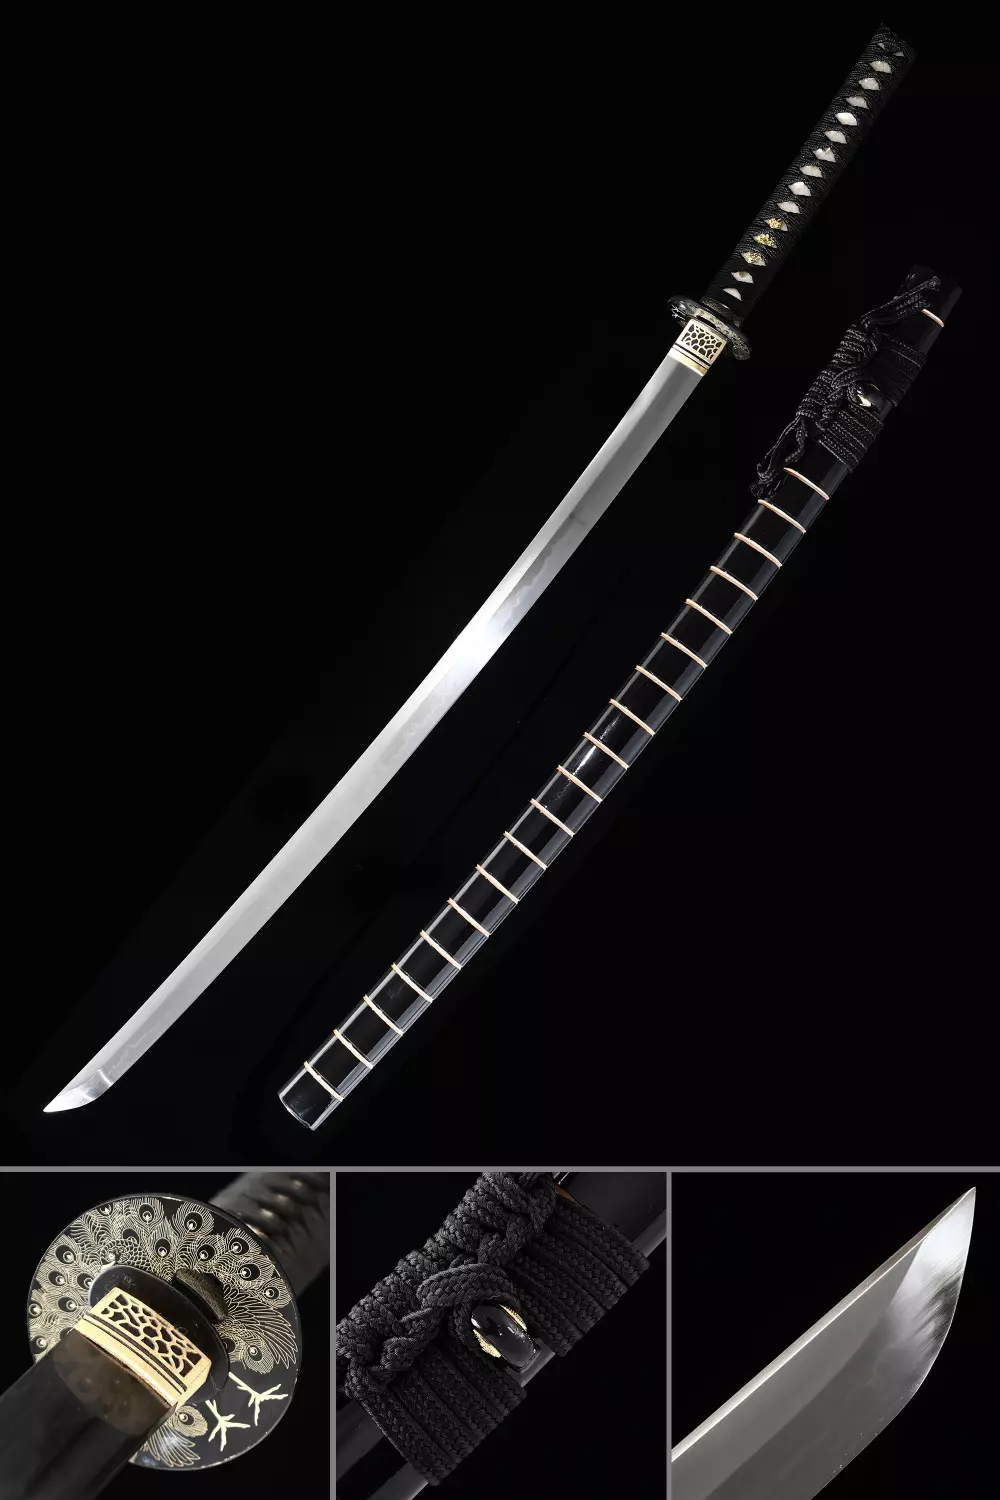 Handmade Folded Steel Katana Japanese Samurai Sword Full Tang Battle Ready Sharp 